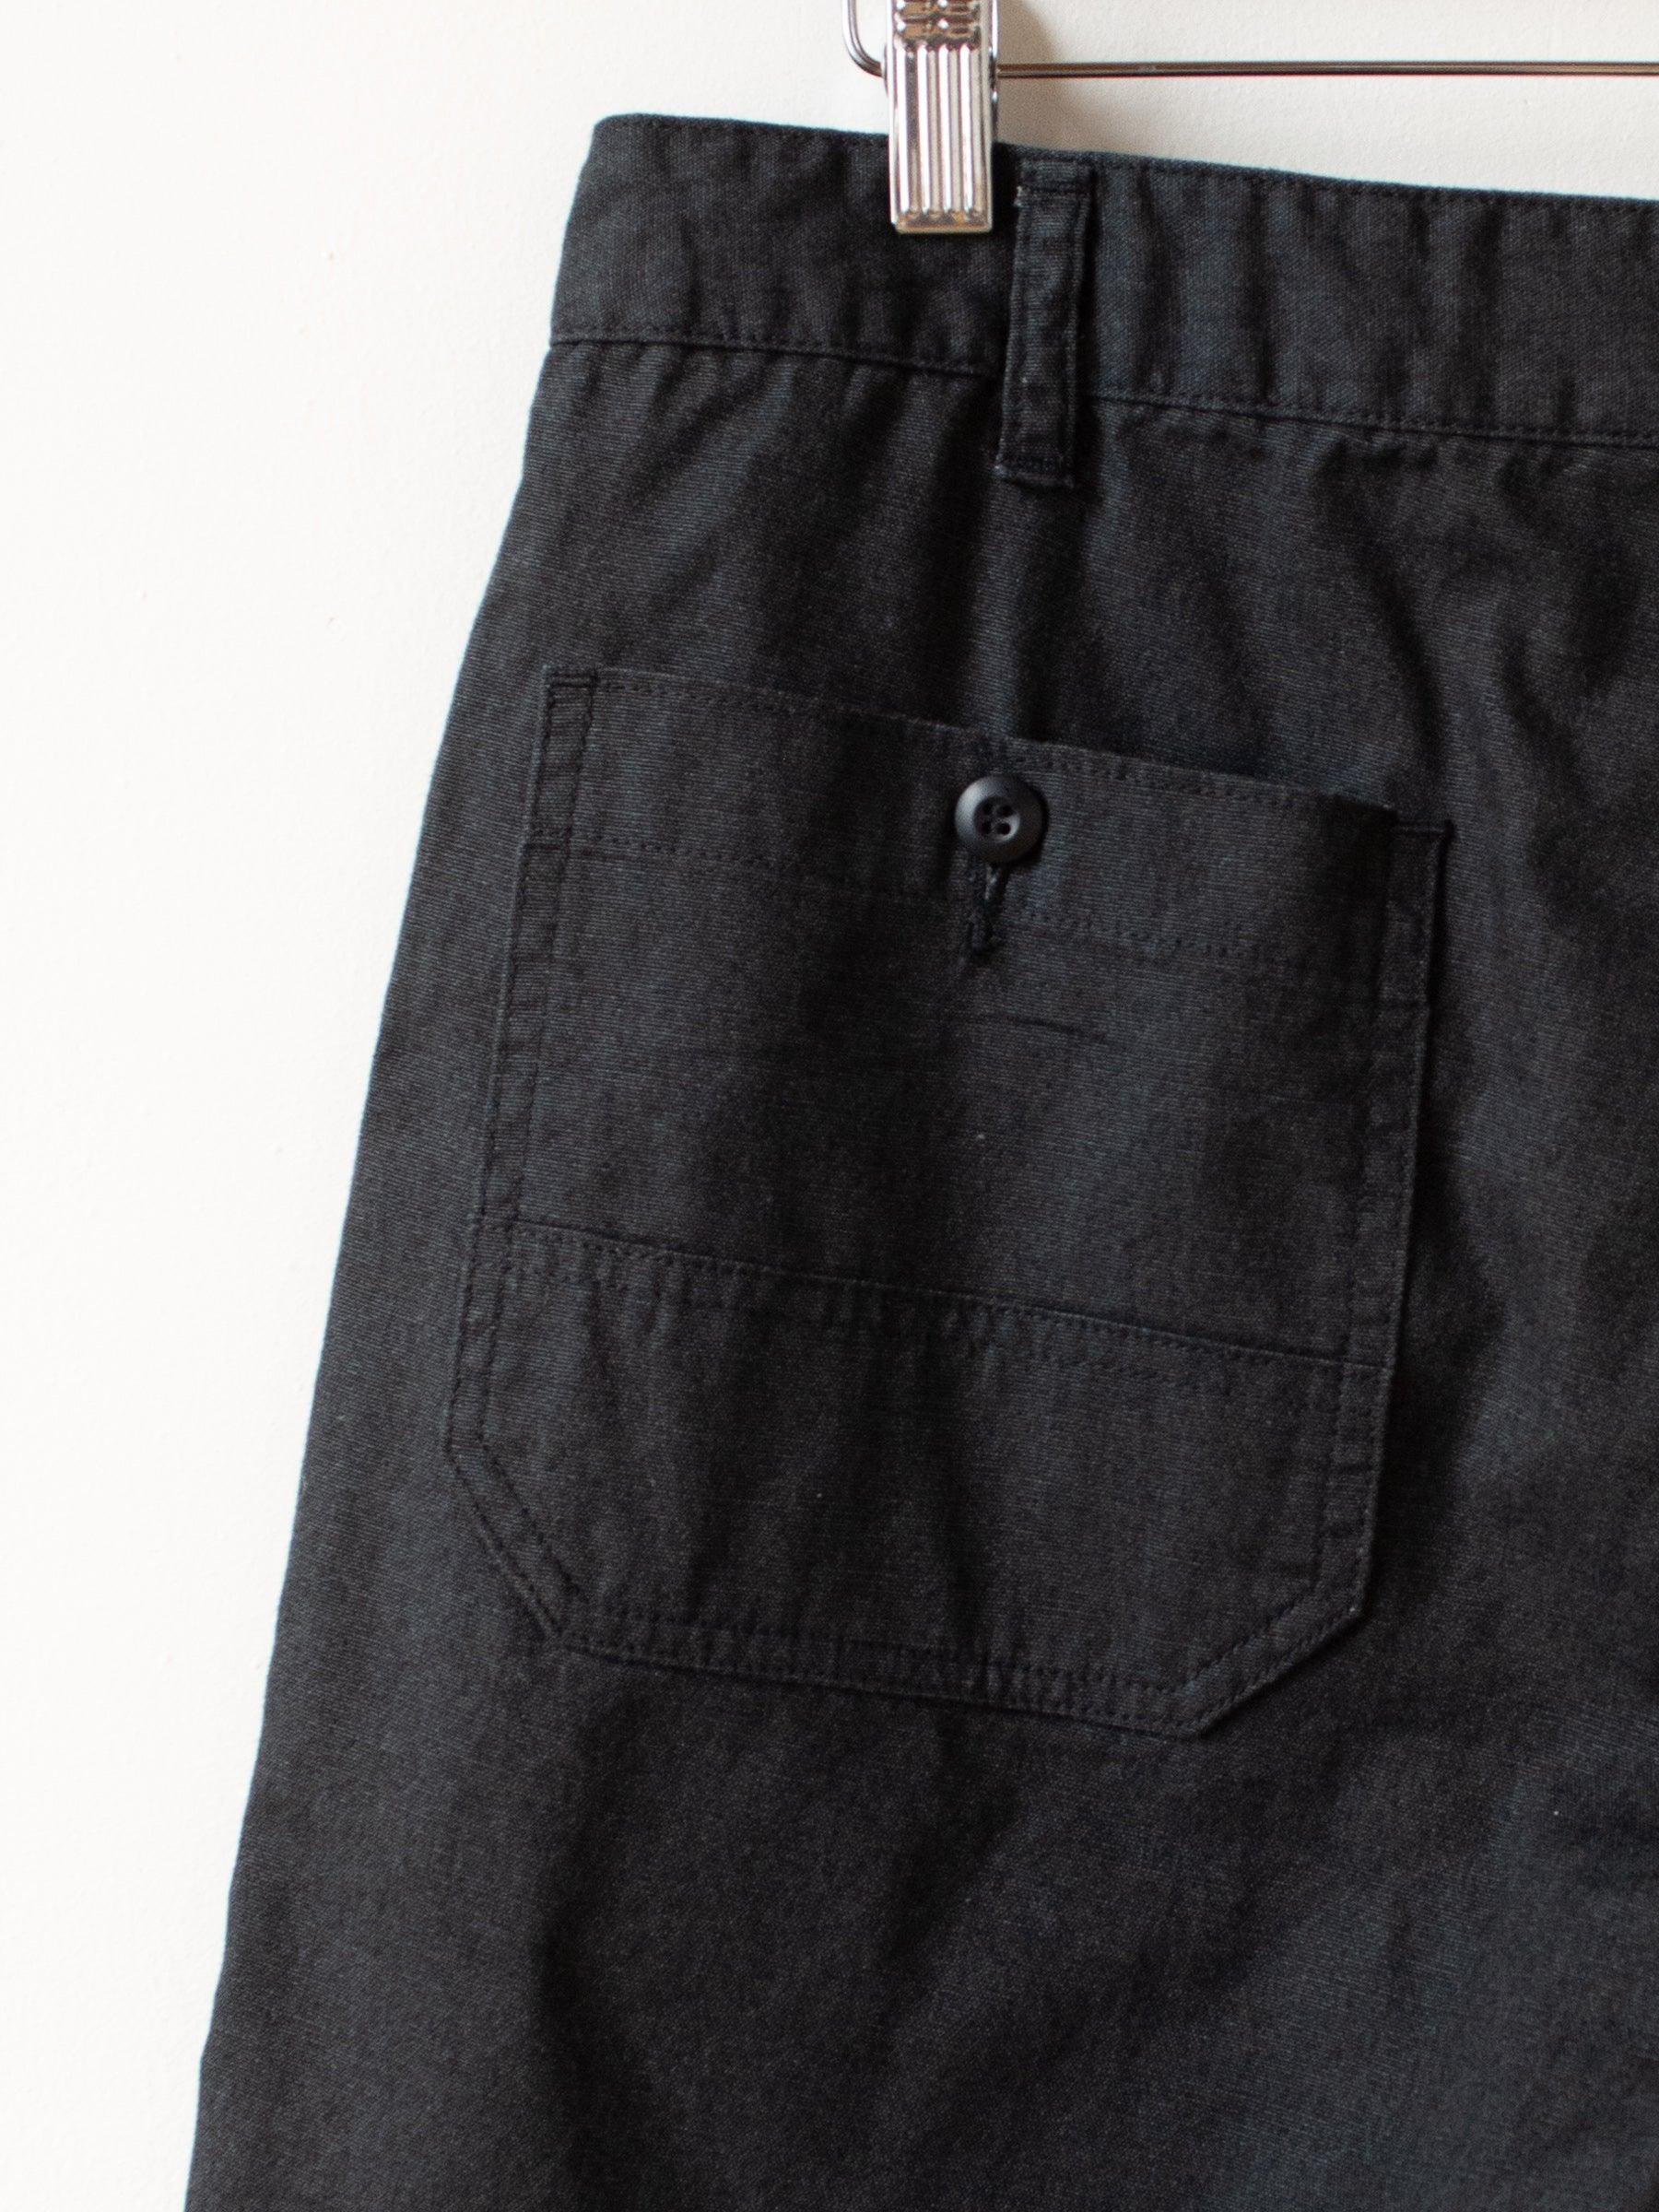 Namu Shop - Fujito Explorer Shorts - Black